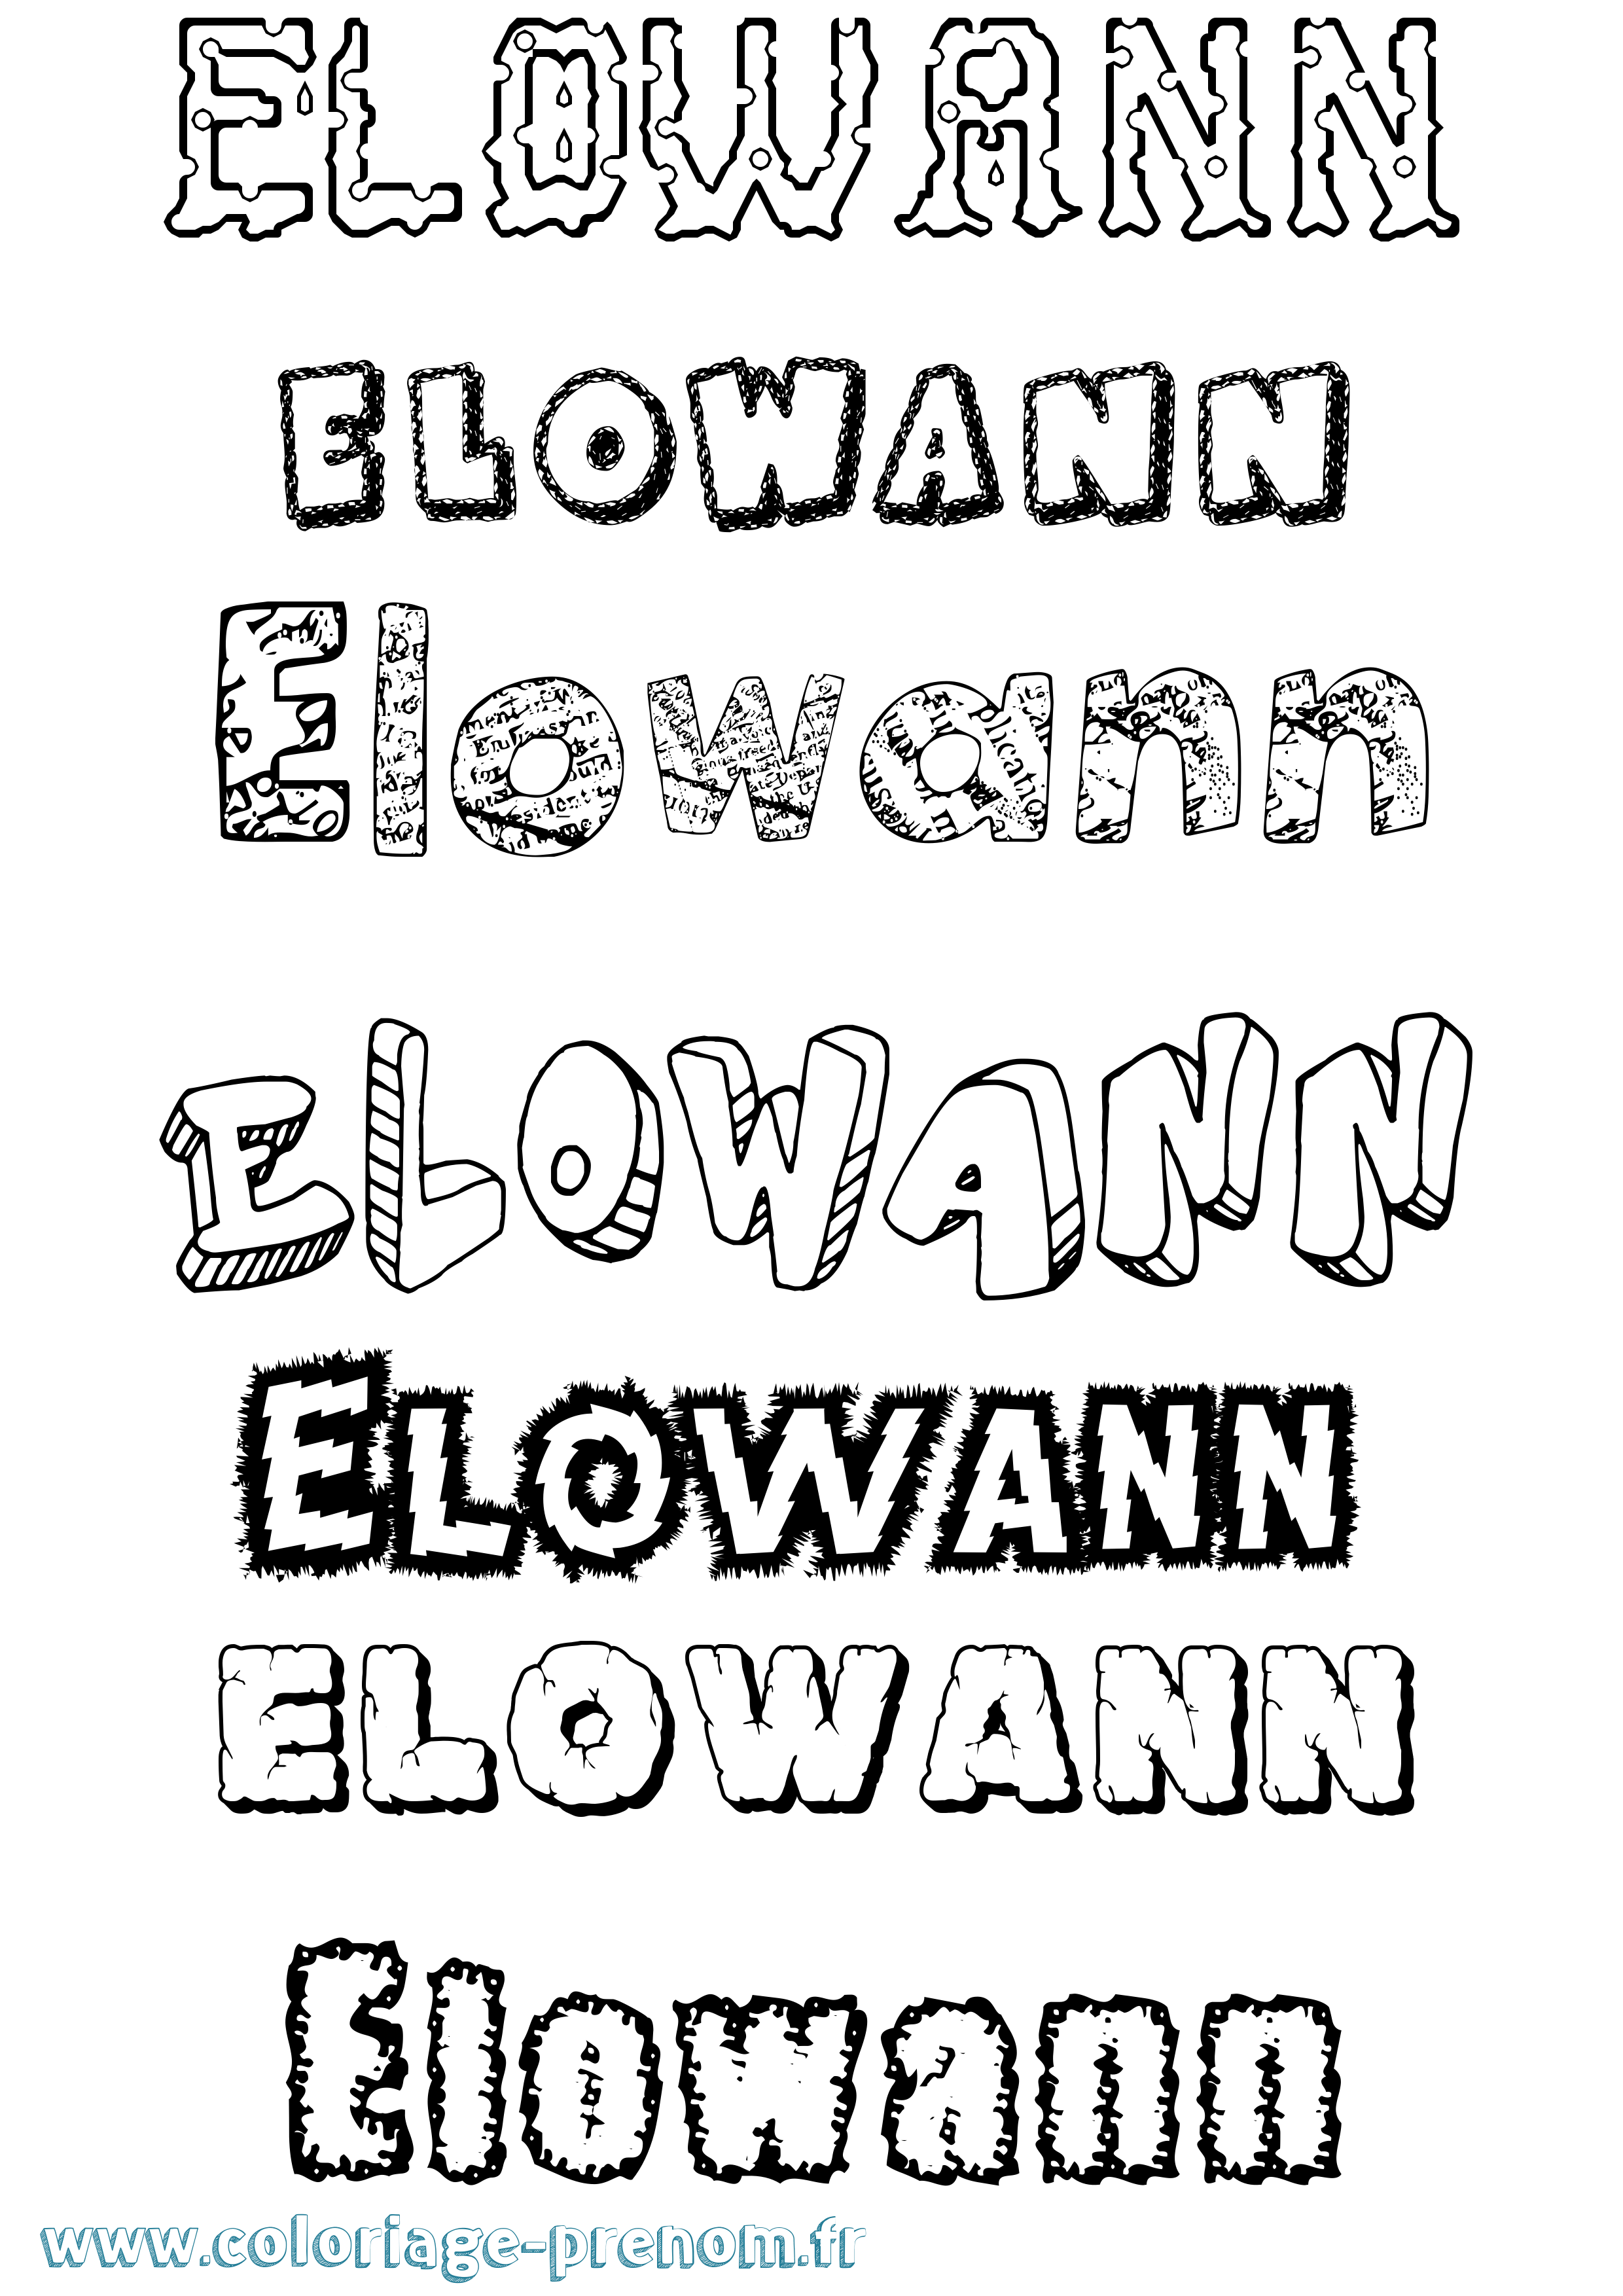 Coloriage prénom Elowann Destructuré